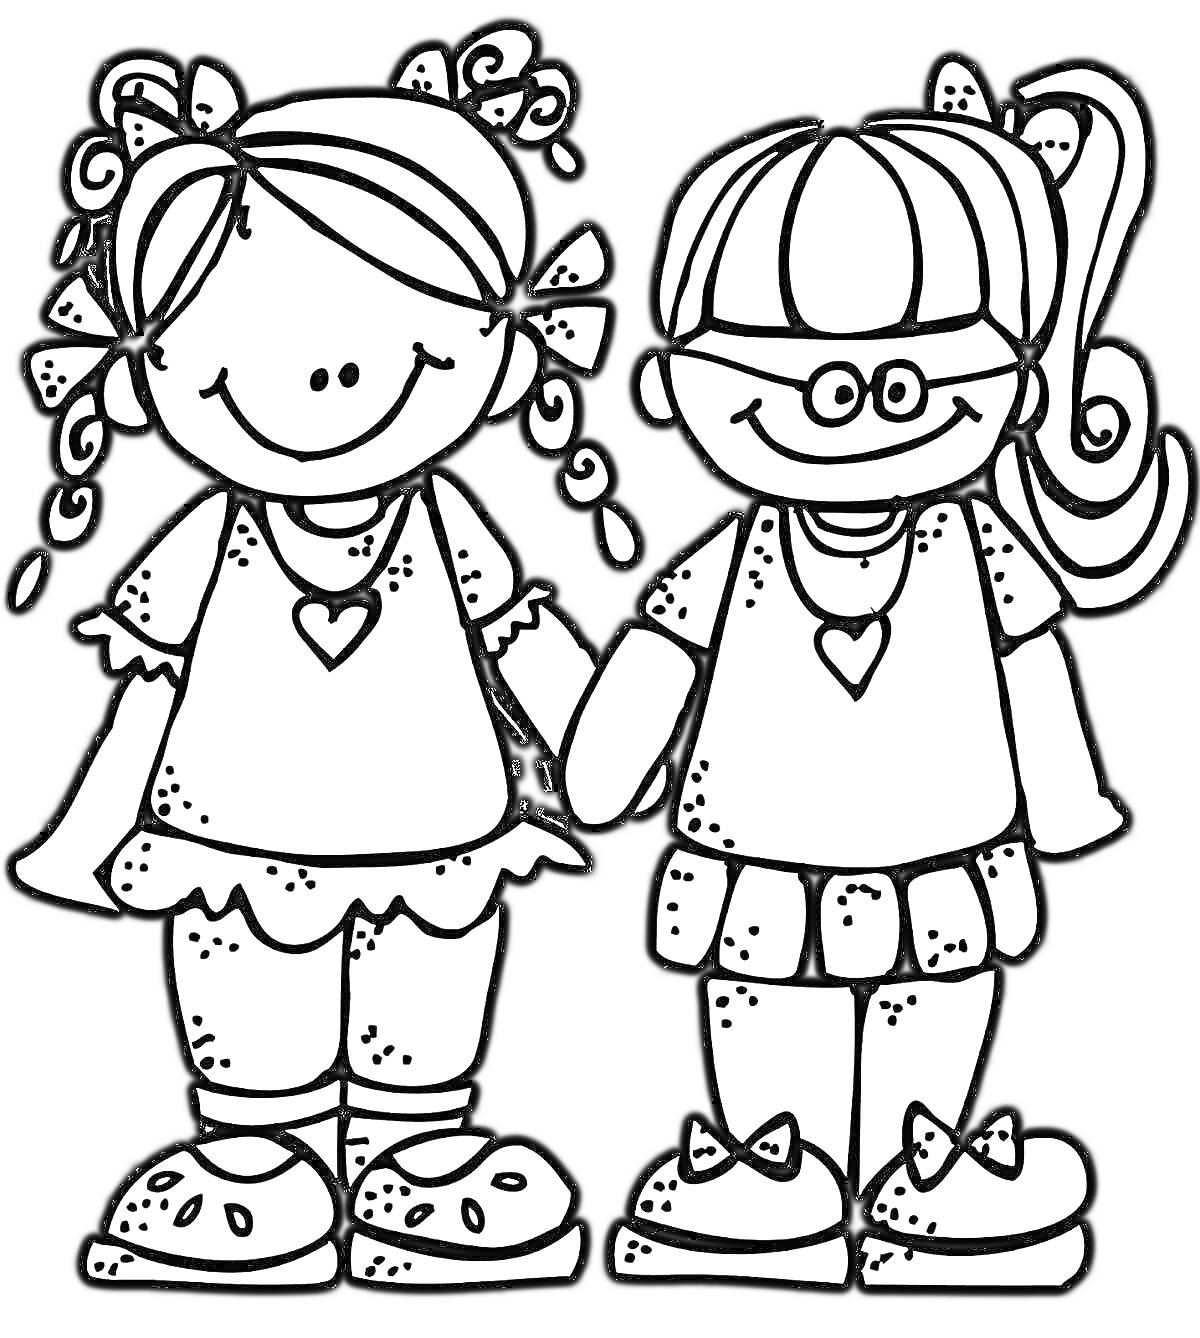 Раскраска Две девочки с сердечками на платьях, взявшиеся за руки